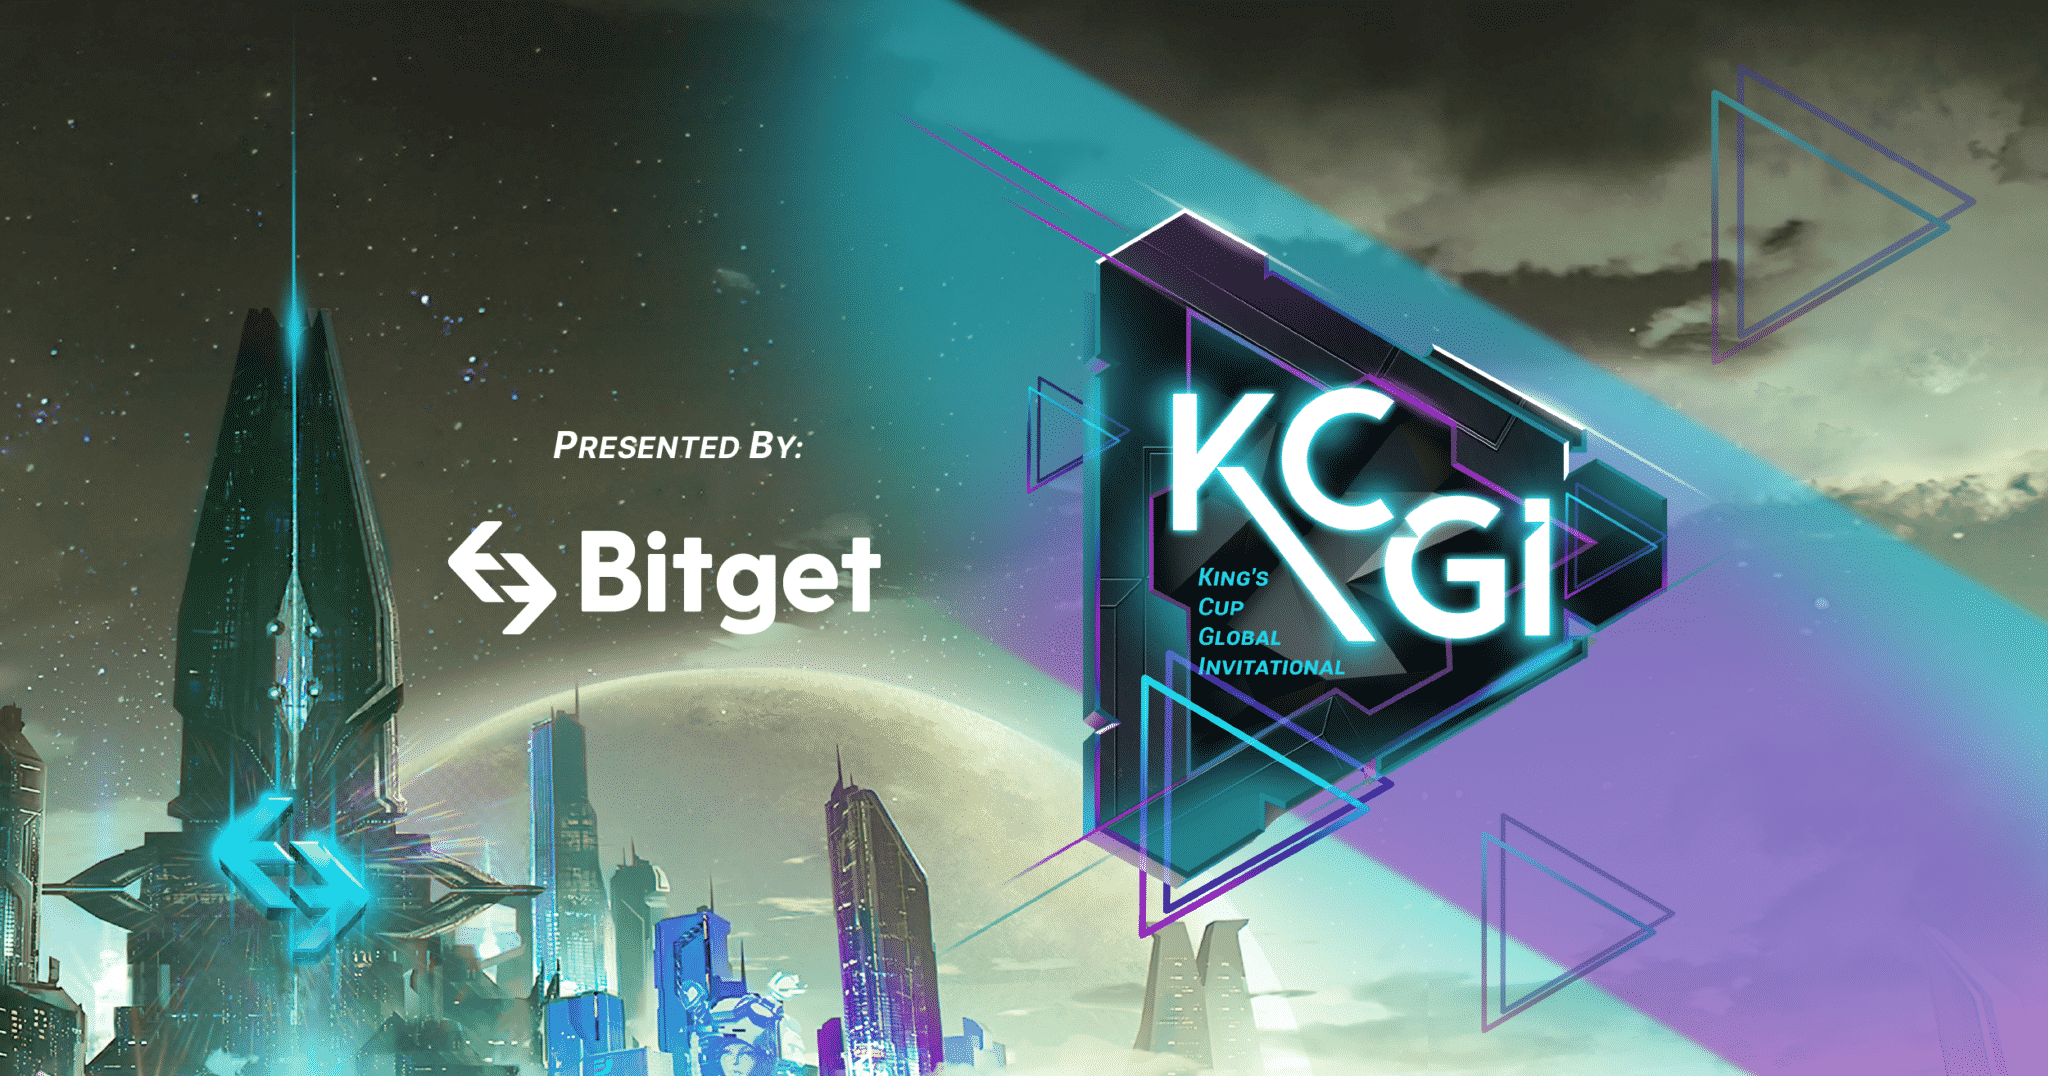 Anmeldung für Bitget-Wettbewerb KCGI 2022 mit Preispool von 200 BTC eröffnet